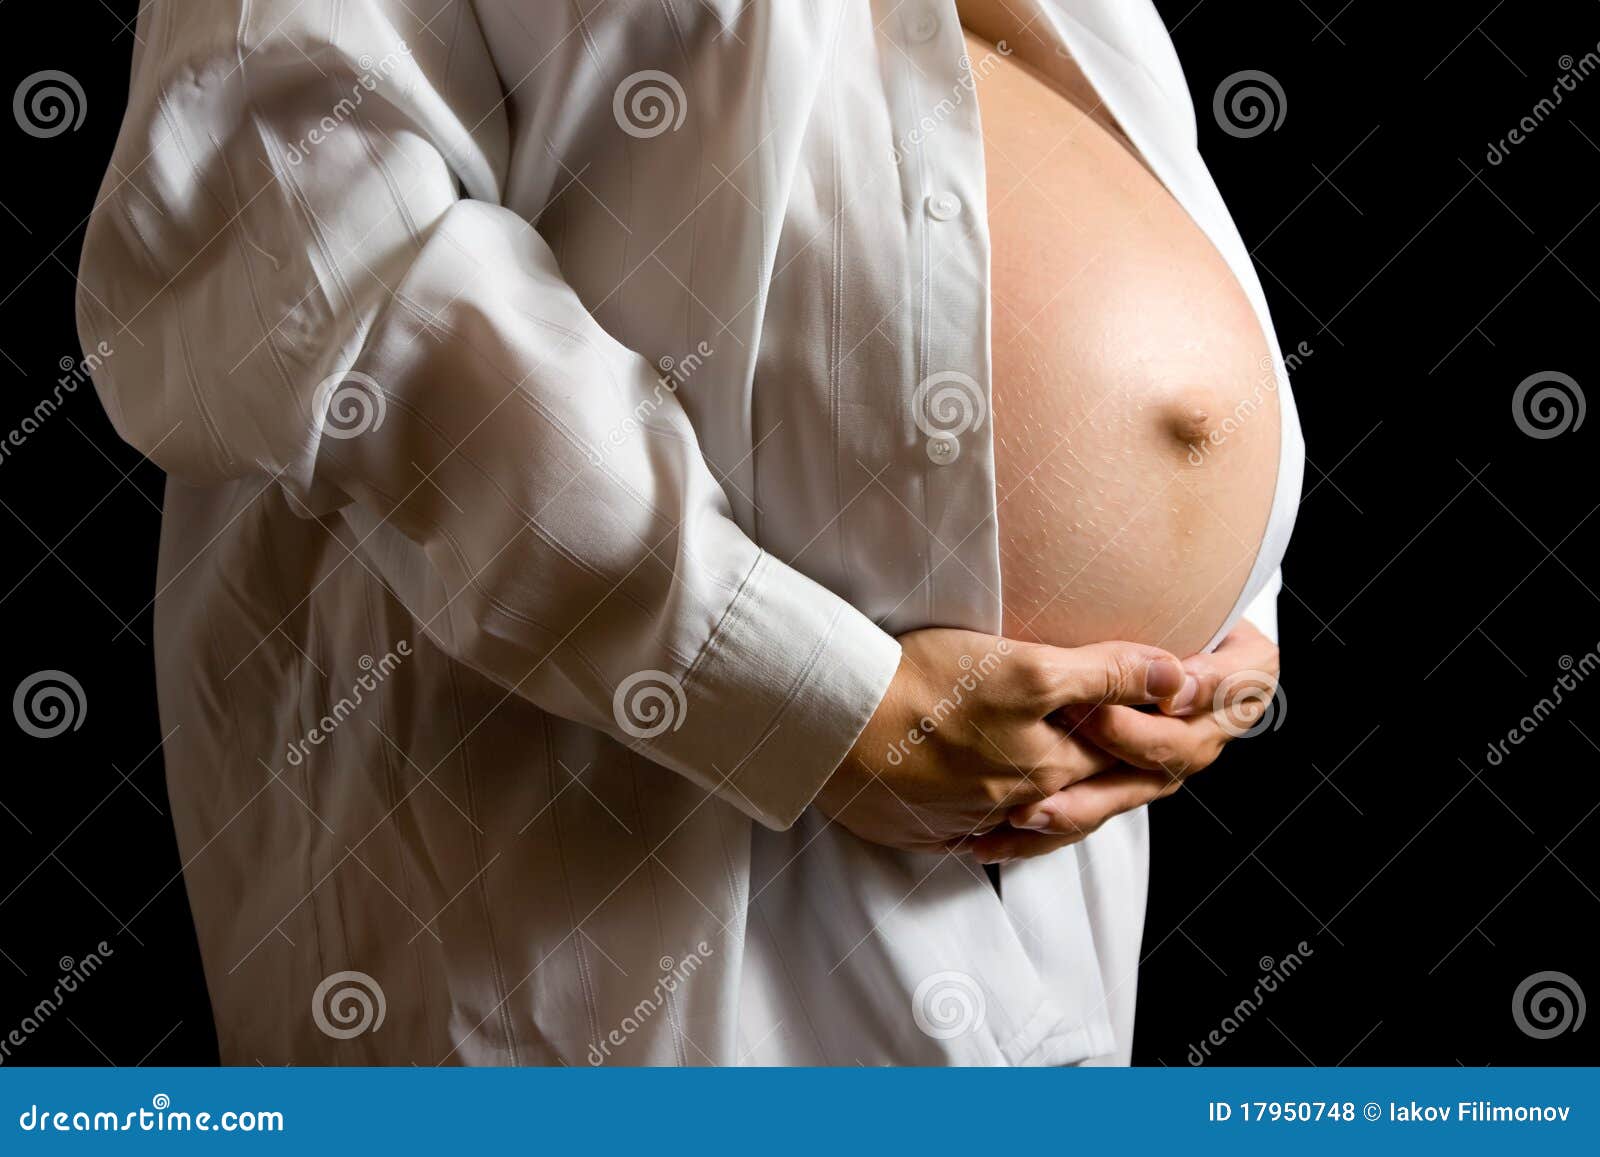 к чему видеть груди беременной фото 5